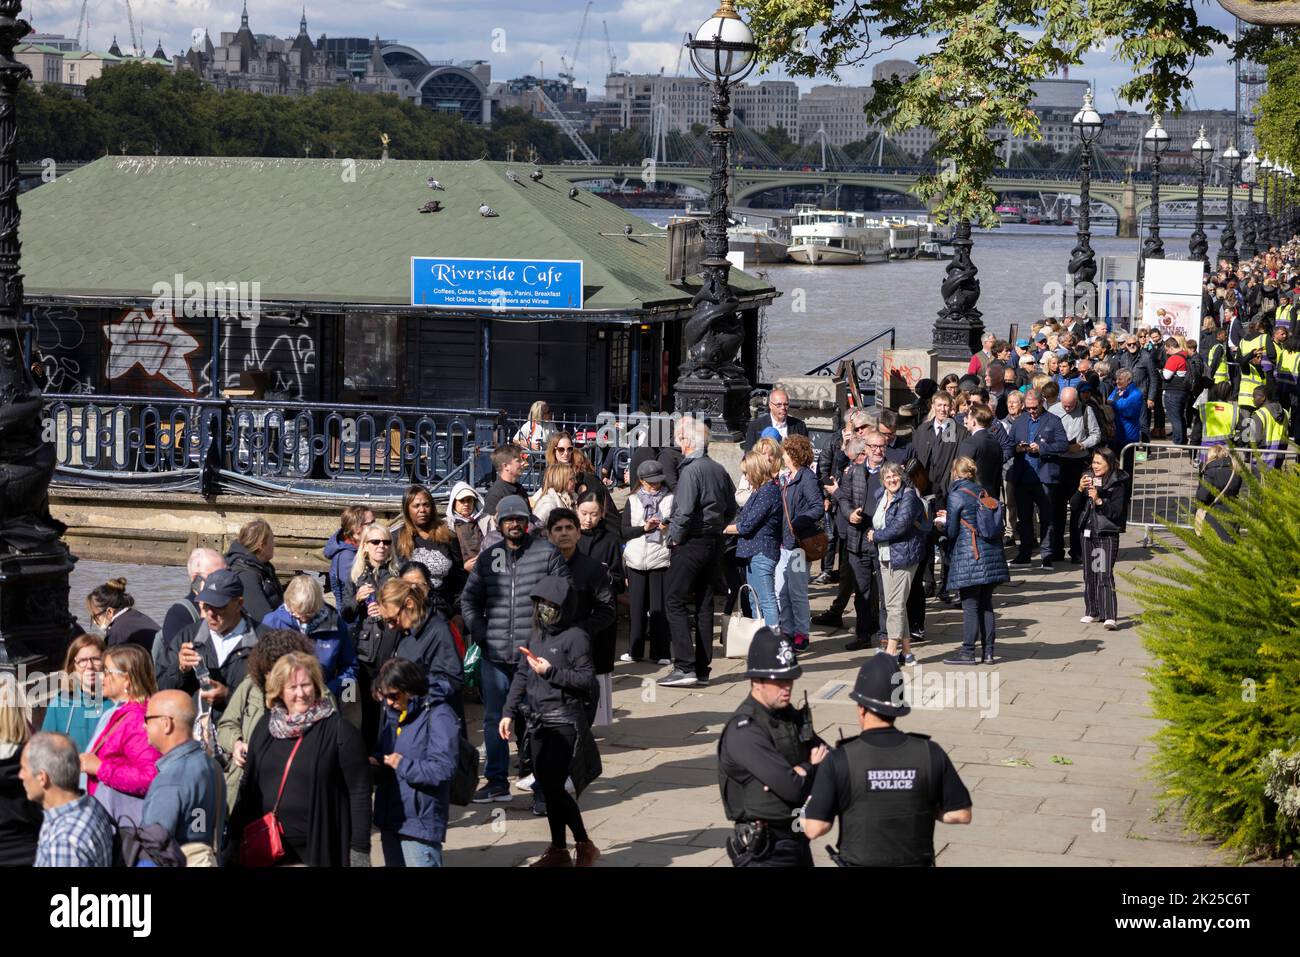 Royal Mourners stehen Schlange, um ihren Respekt zu zollen und das im Bundesstaat Queen Elizabeth II, gegenüber der Westminster Bridge, Southbank, London, UK liegende Viertel zu besuchen Stockfoto